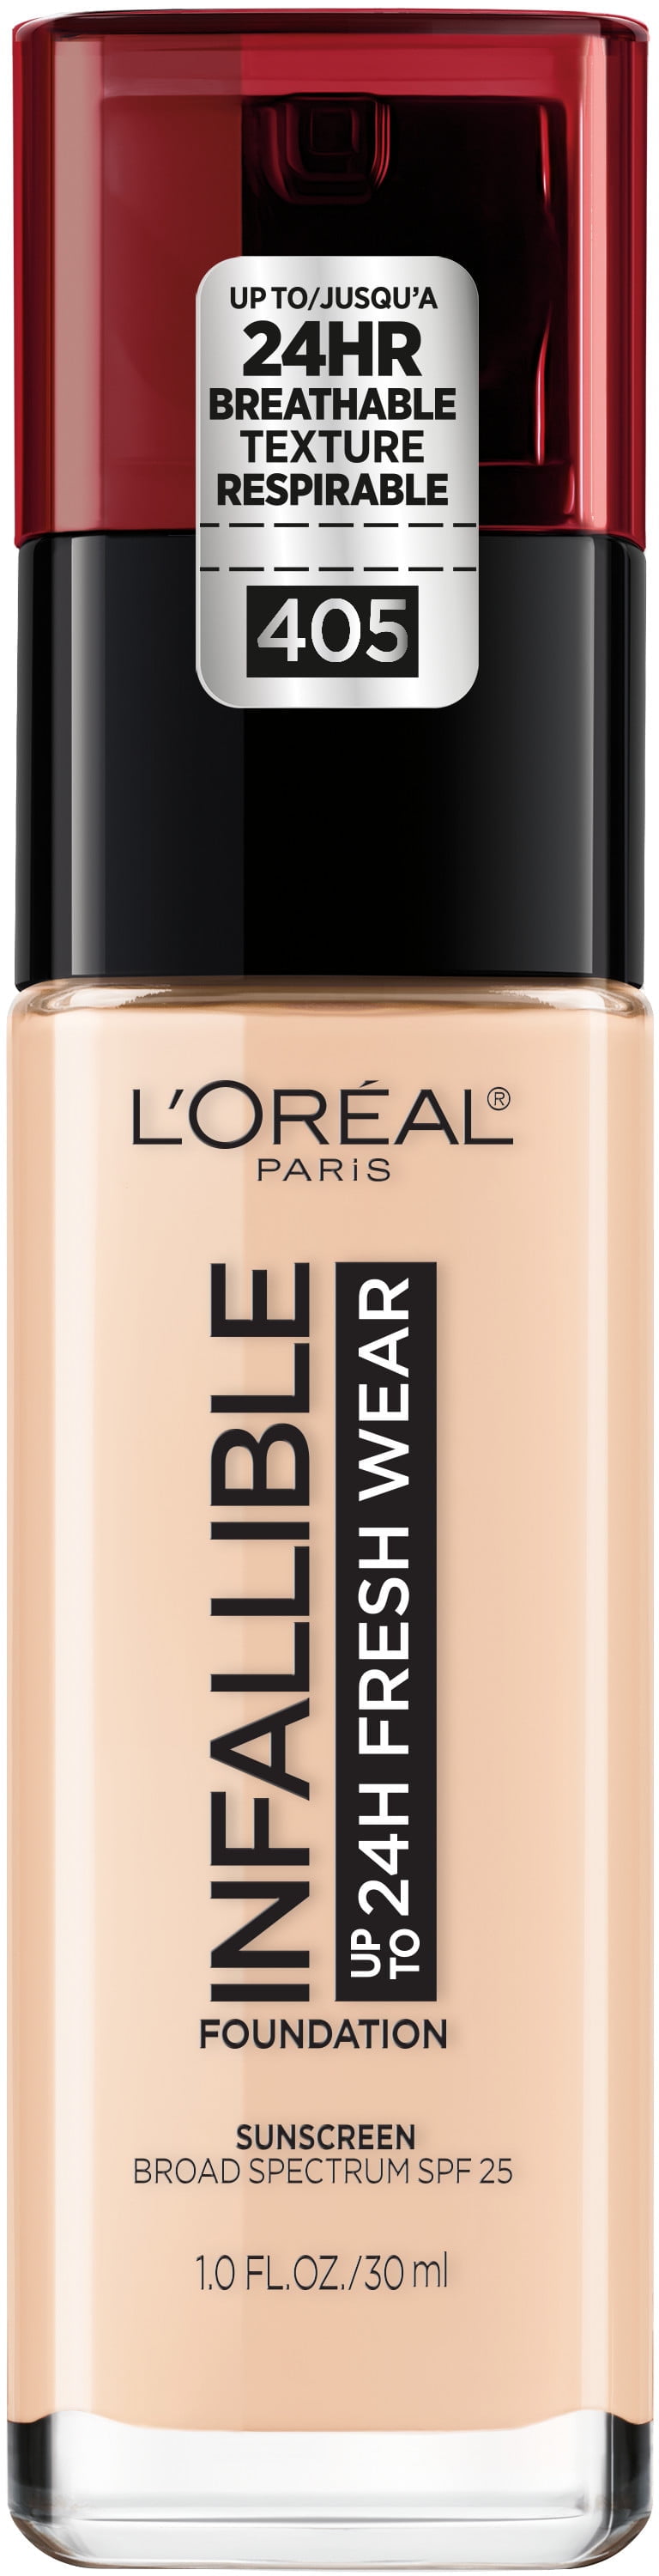 L'Oreal Paris Infallible Fresh Wear 24 Hr Liquid Foundation Makeup, 405 Porcelain, 1 fl oz